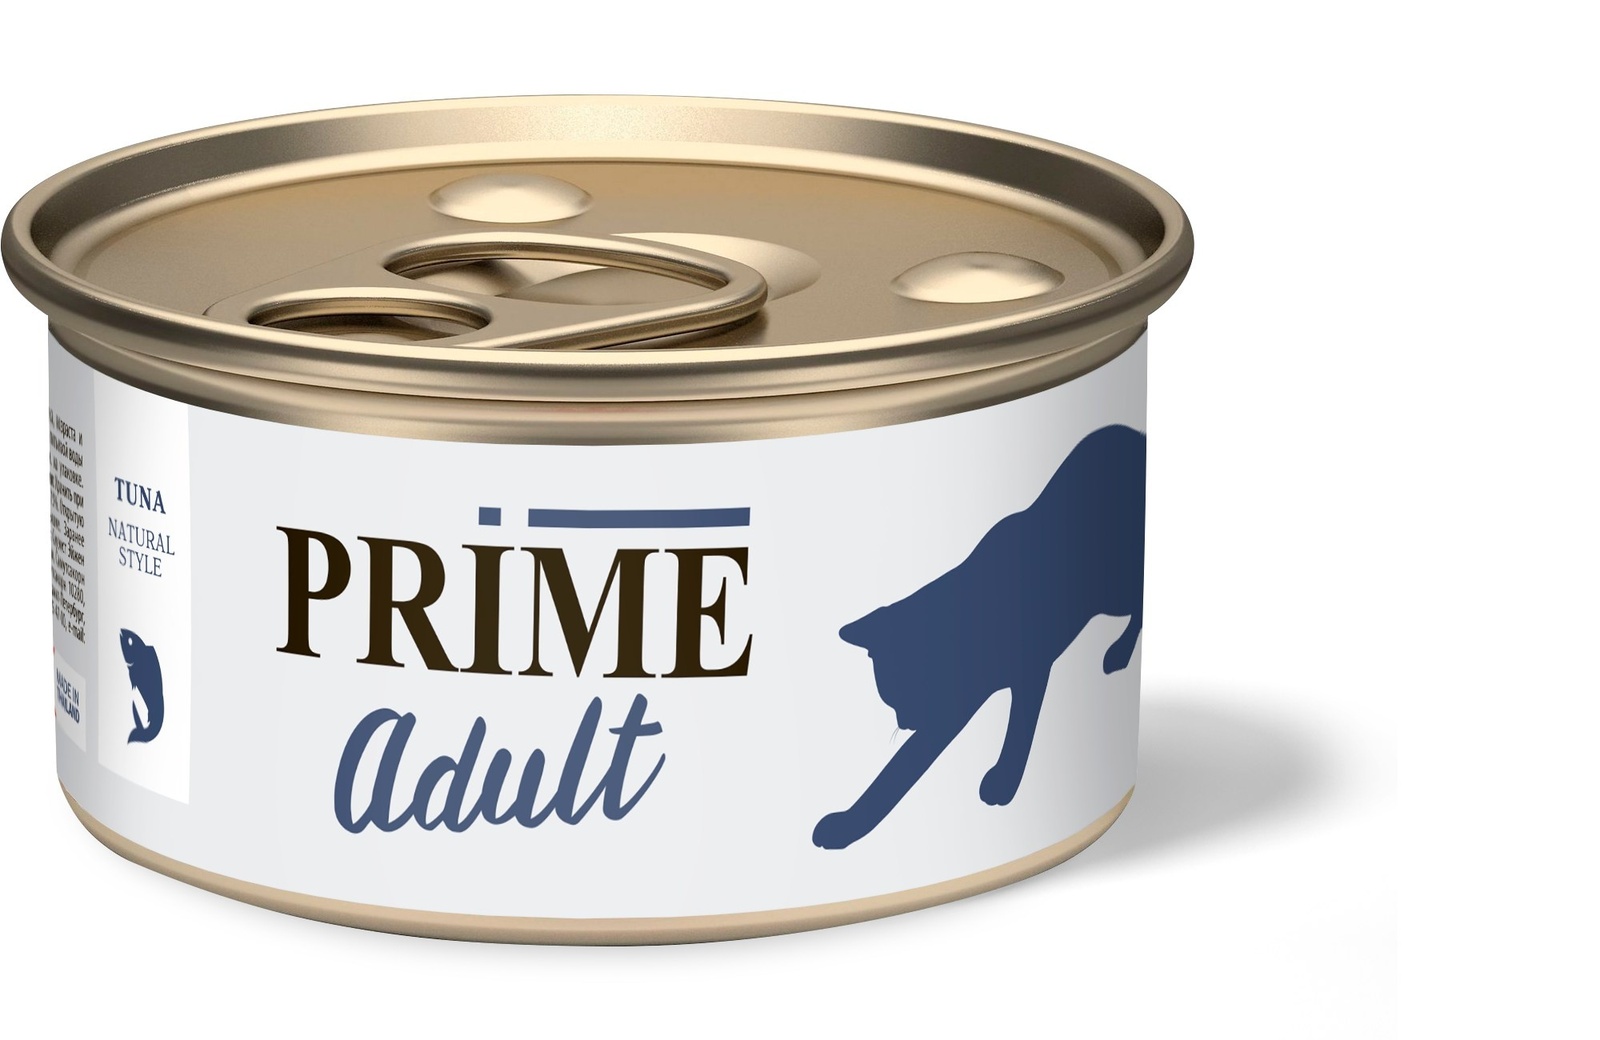 Prime Prime консервы для кошек тунец в собственном соку (70 г) prime prime консервы для кошек тунец с кальмаром в собственном соку 70 г